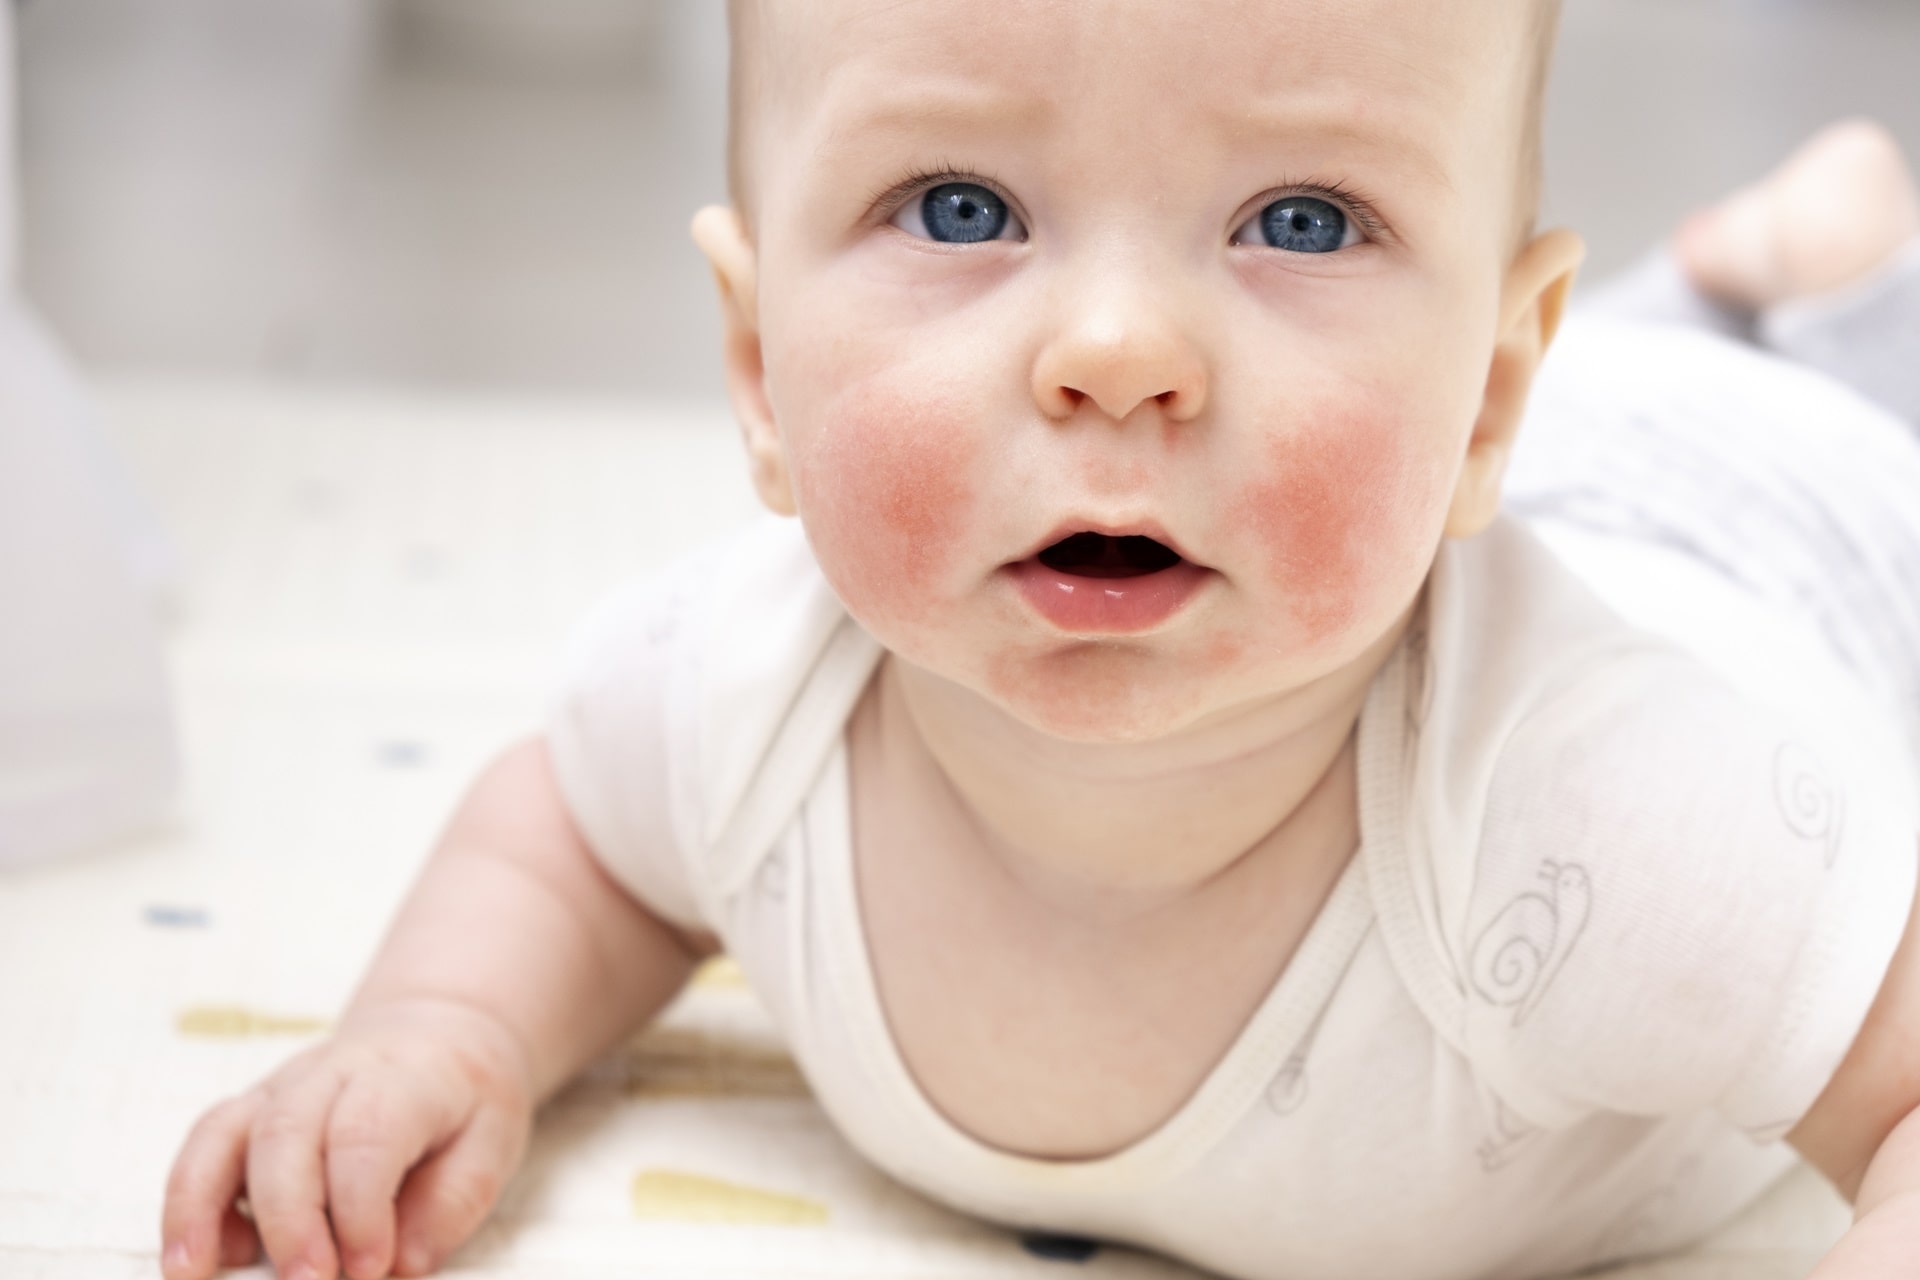 Skin Allergy in Infants